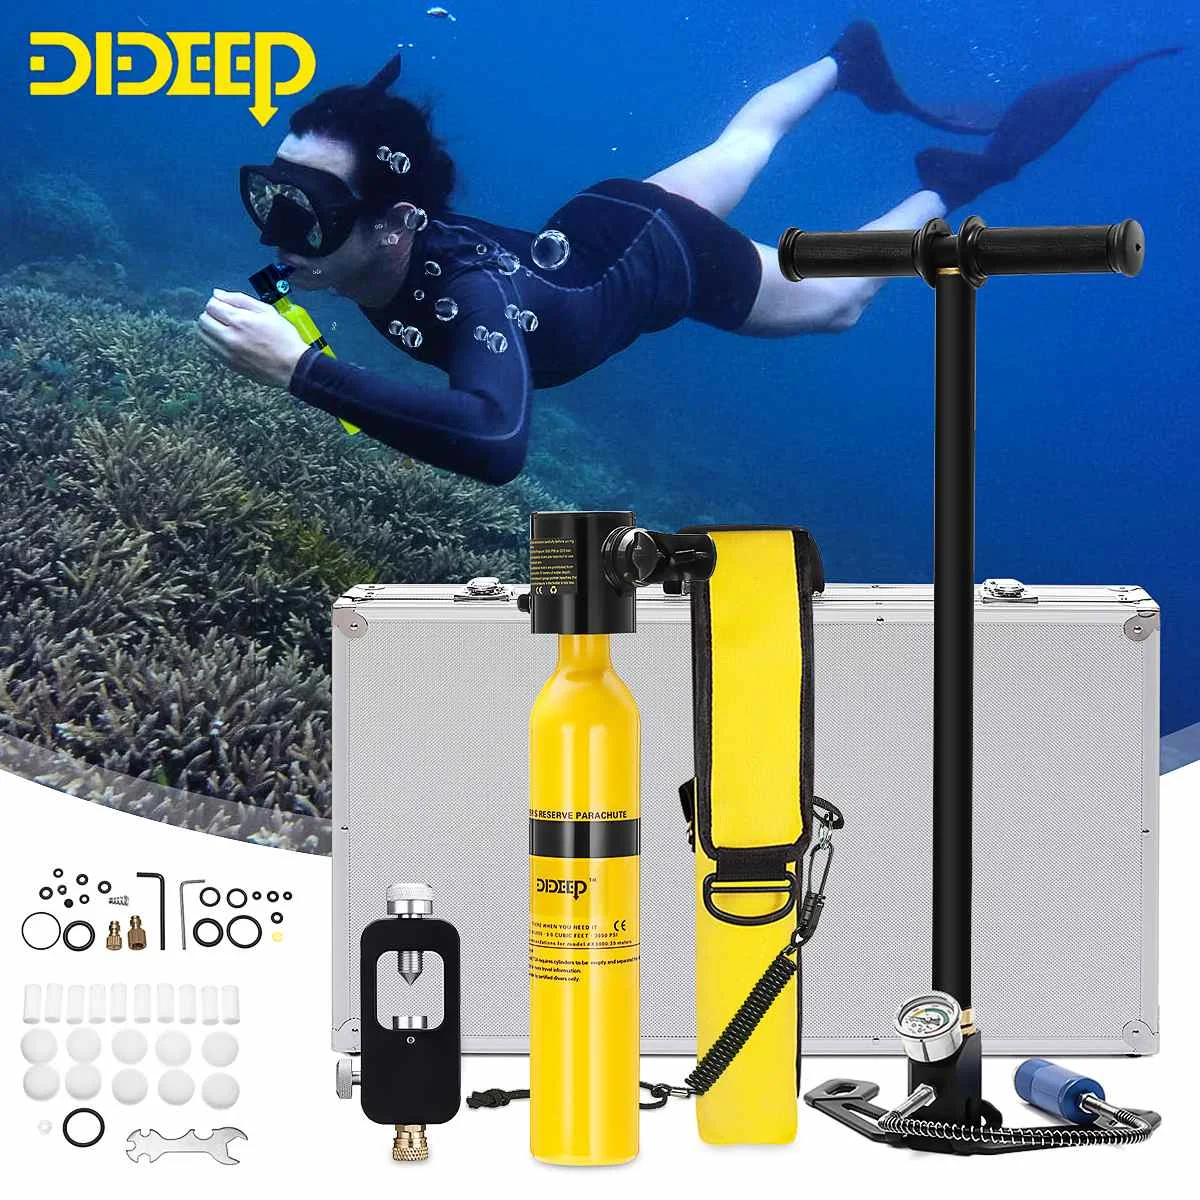 DIDEEP система дайвинга мини дыхательнай аппарат для плавания под водой резервуар для подводного кислорода цилиндр запасной Воздушный бак насос алюминиевая коробка подводное плавание оборудование для дайвинга